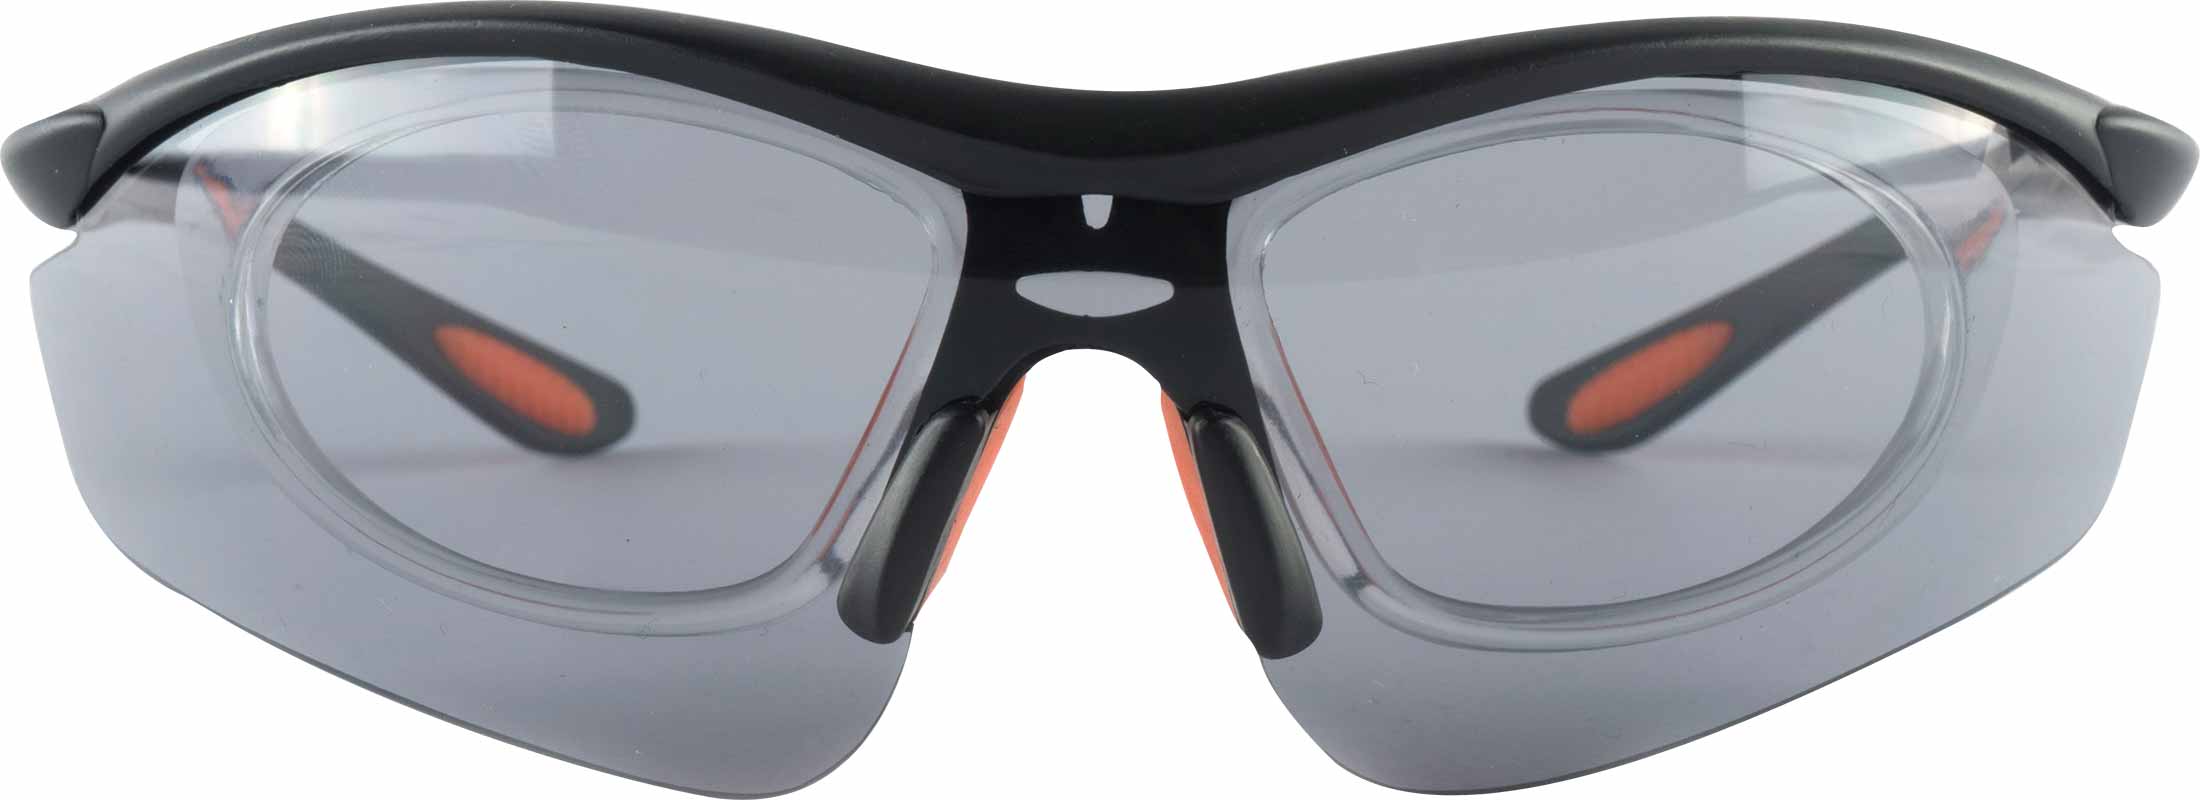 Slime Uredelighed Vær stille eXo Active Giselle sportsbriller med styrke | Extra Optical